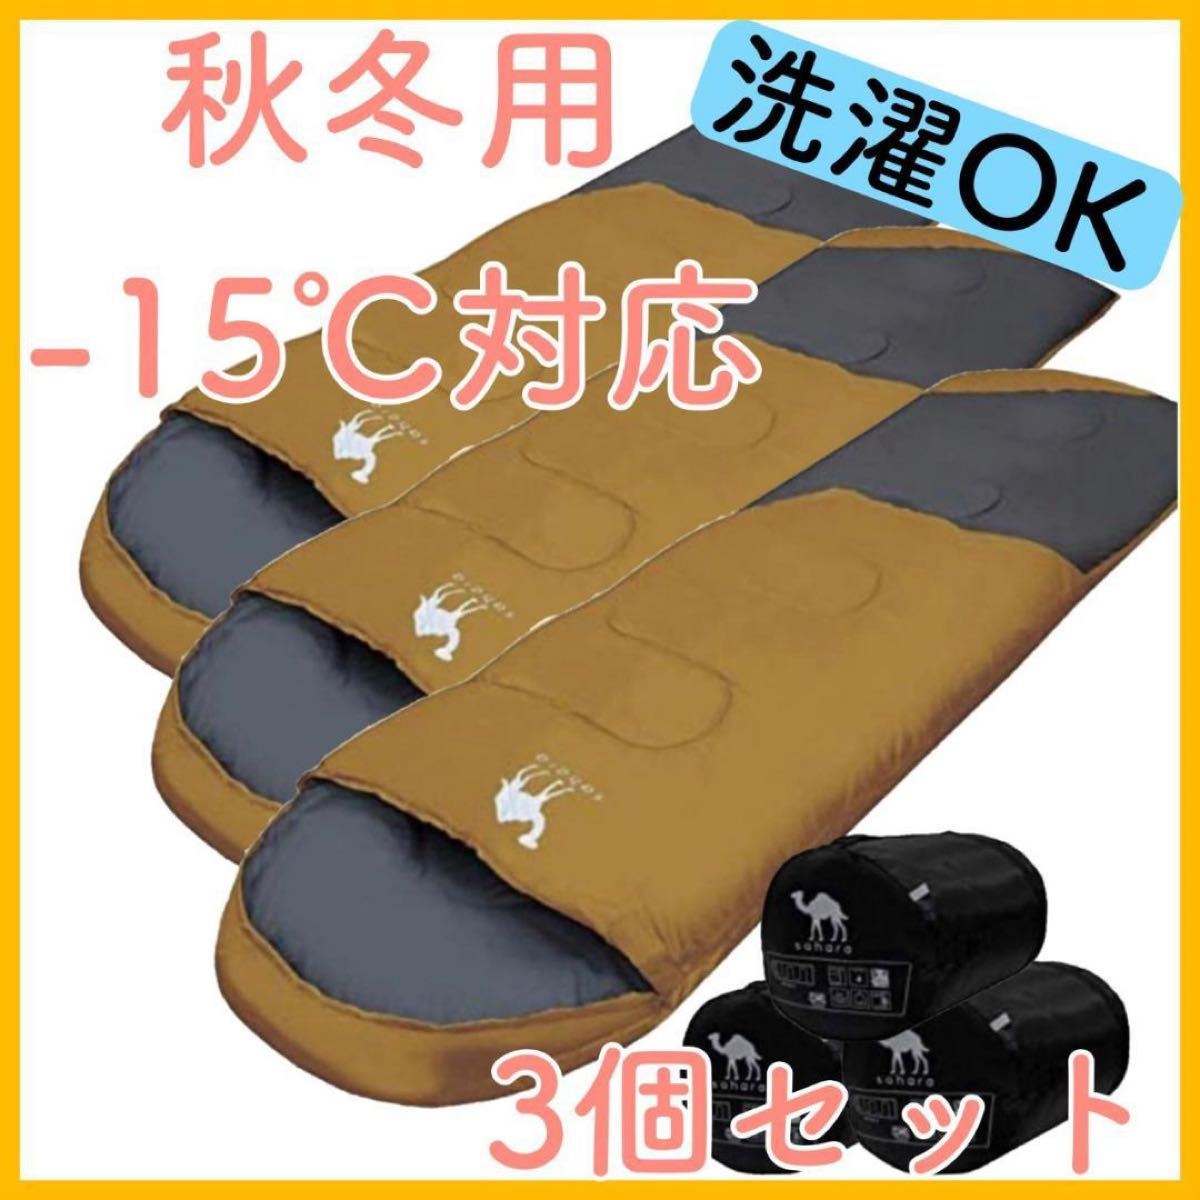 寝袋 シュラフ 封筒型 -15℃ コヨーテ 新品未使用 キャンプ 春用 冬用